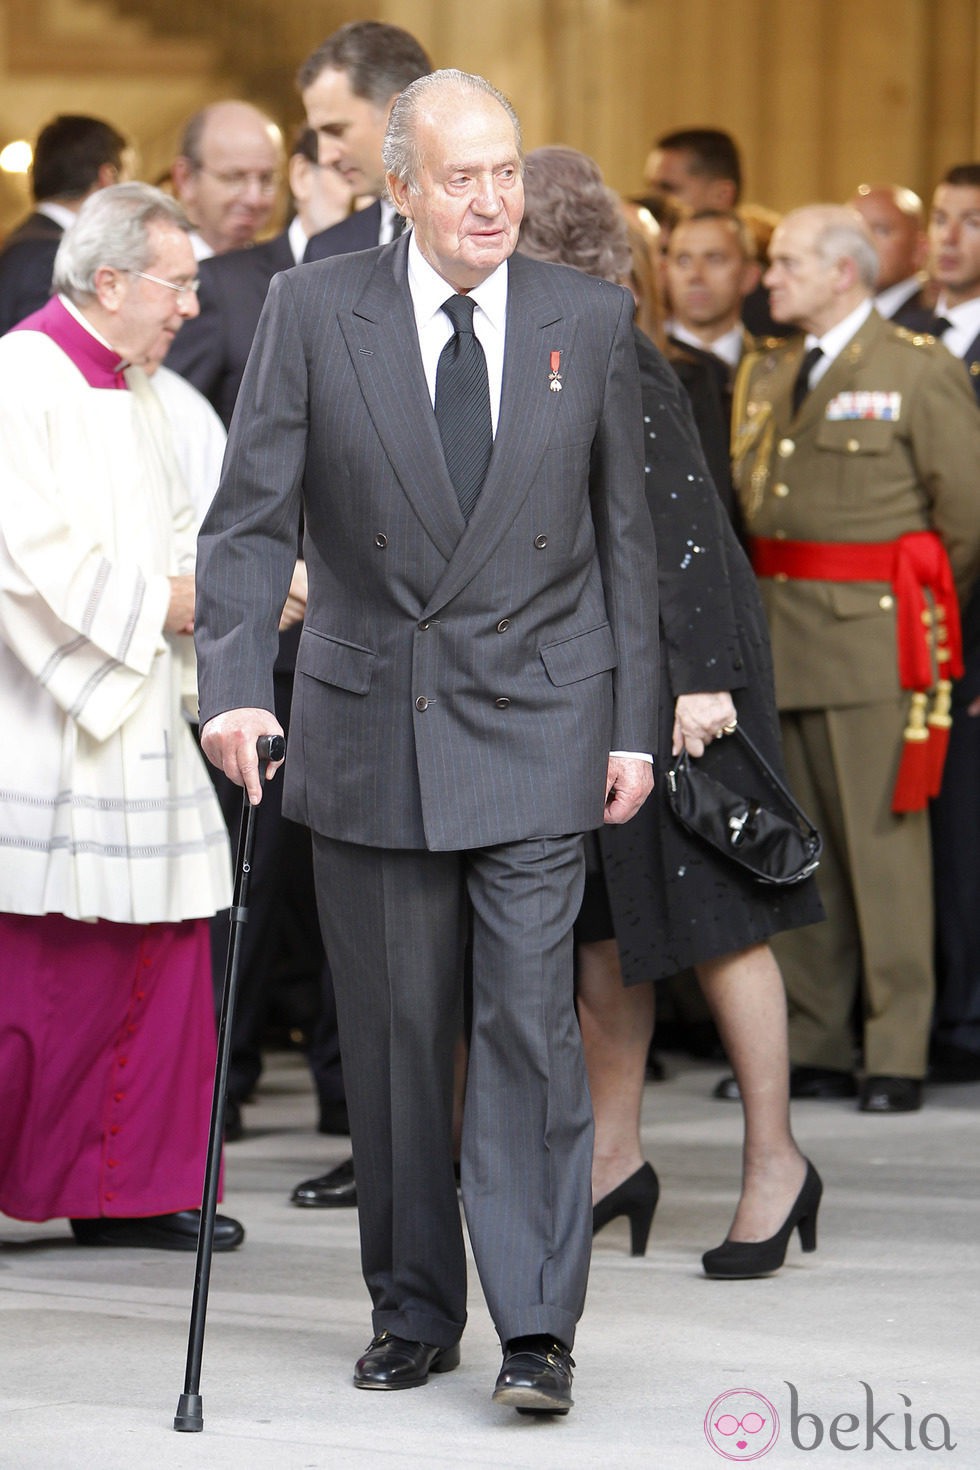 El Rey Juan Carlos en el funeral de Estado de Adolfo Suárez